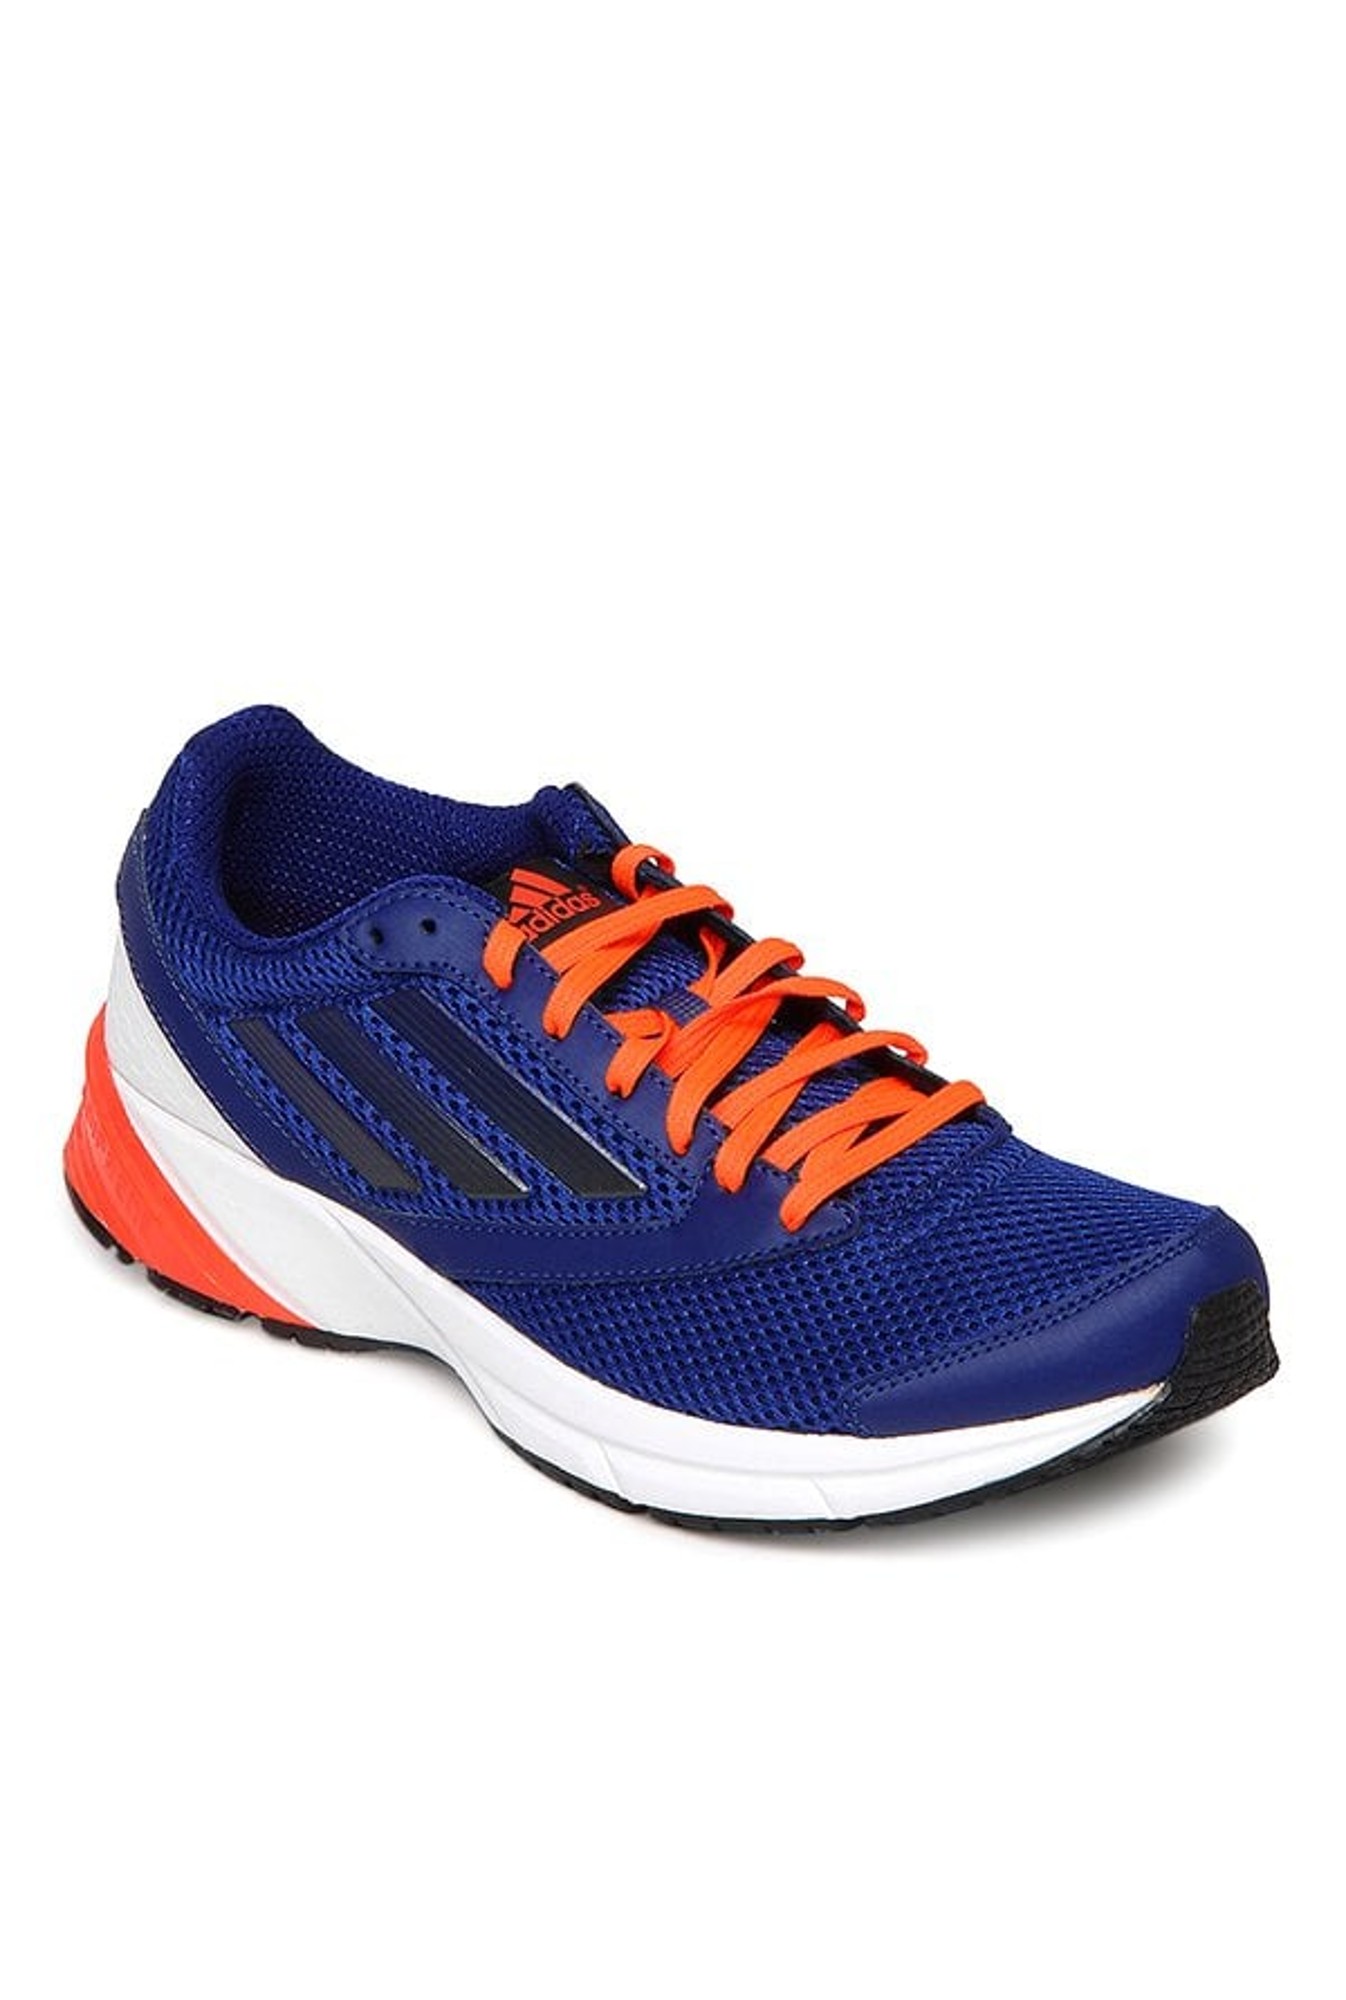 adidas blue and orange shoes